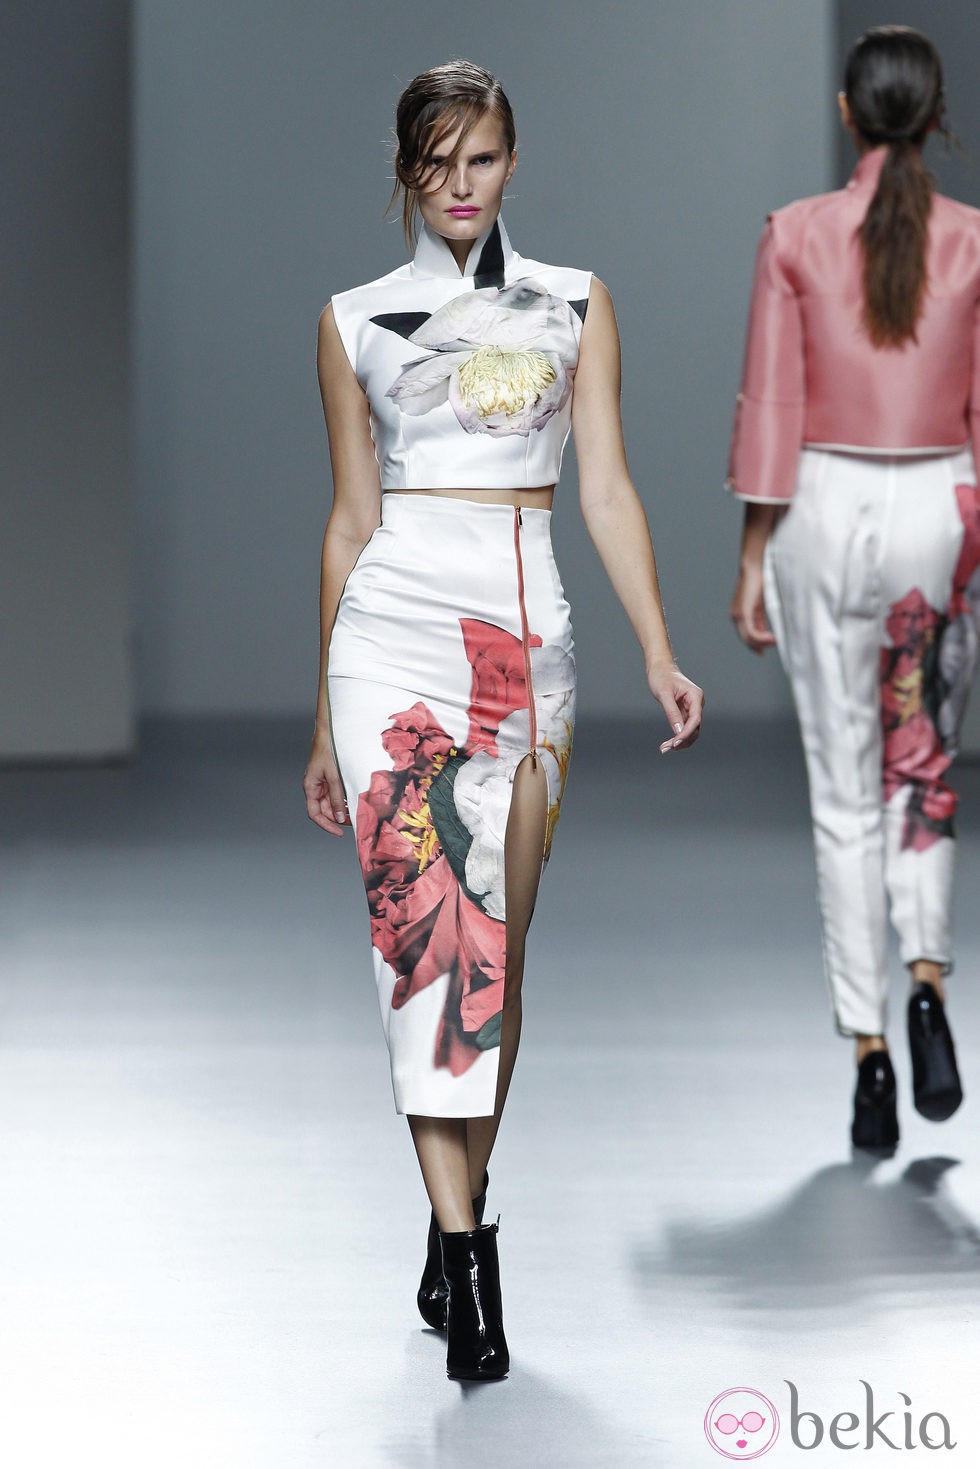 Falda larga con estampado floral de la colección Juan Vidal primavera/verano 2014 en Madrid Fashion Week